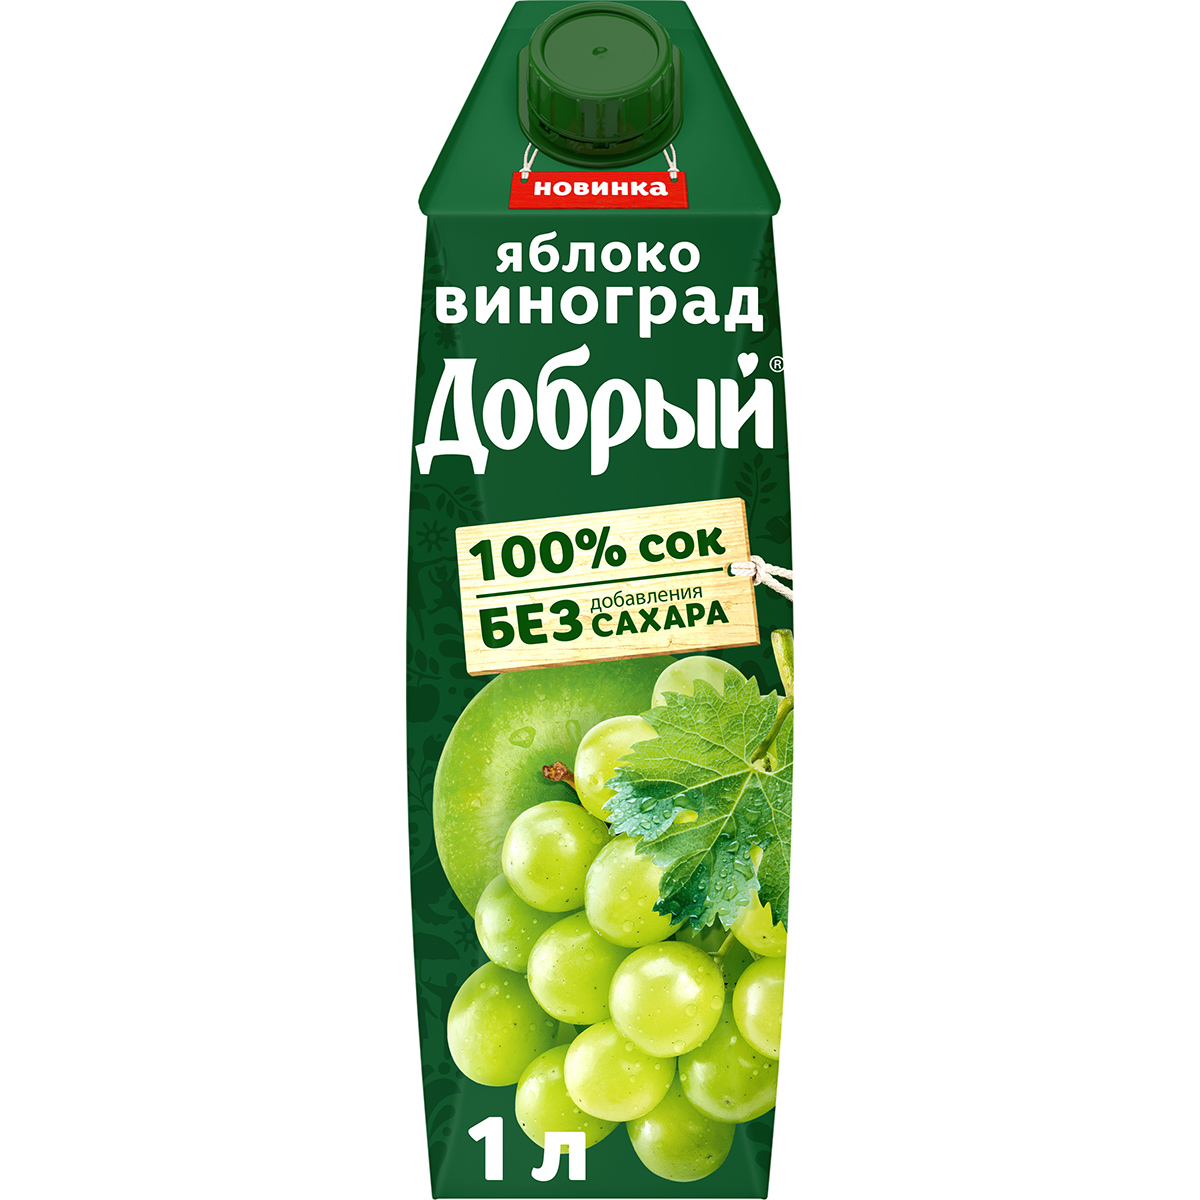 Сок Добрый Яблоко-виноград 1 л сок соки крыма яблоко виноград 1 л